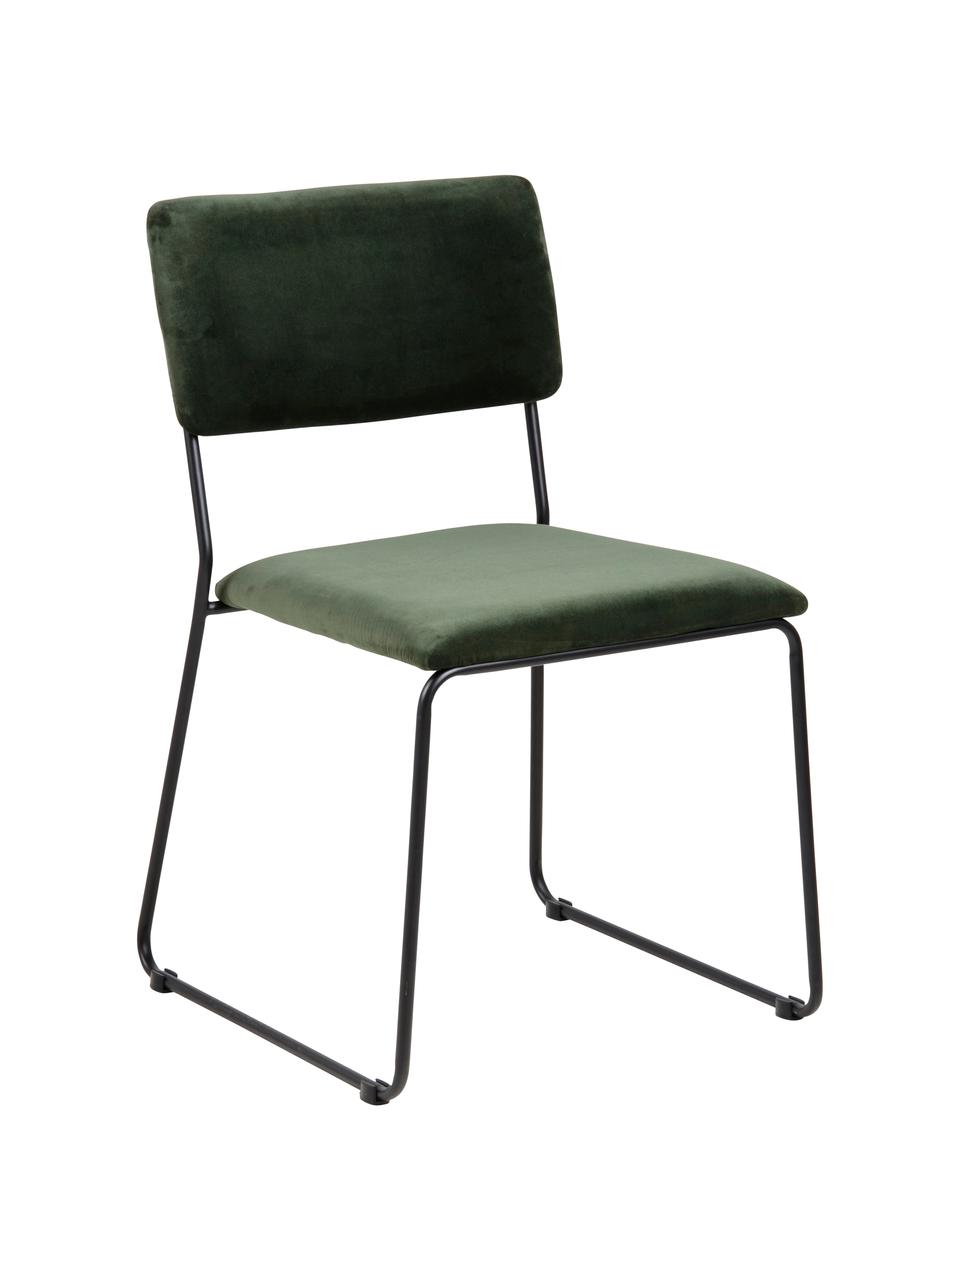 Krzesło tapicerowane z aksamitu Cornelia, 2 szt., Tapicerka: aksamit poliestrowy 25 00, Nogi: metal lakierowany, Zielony, czarny, S 50 x G 54 cm